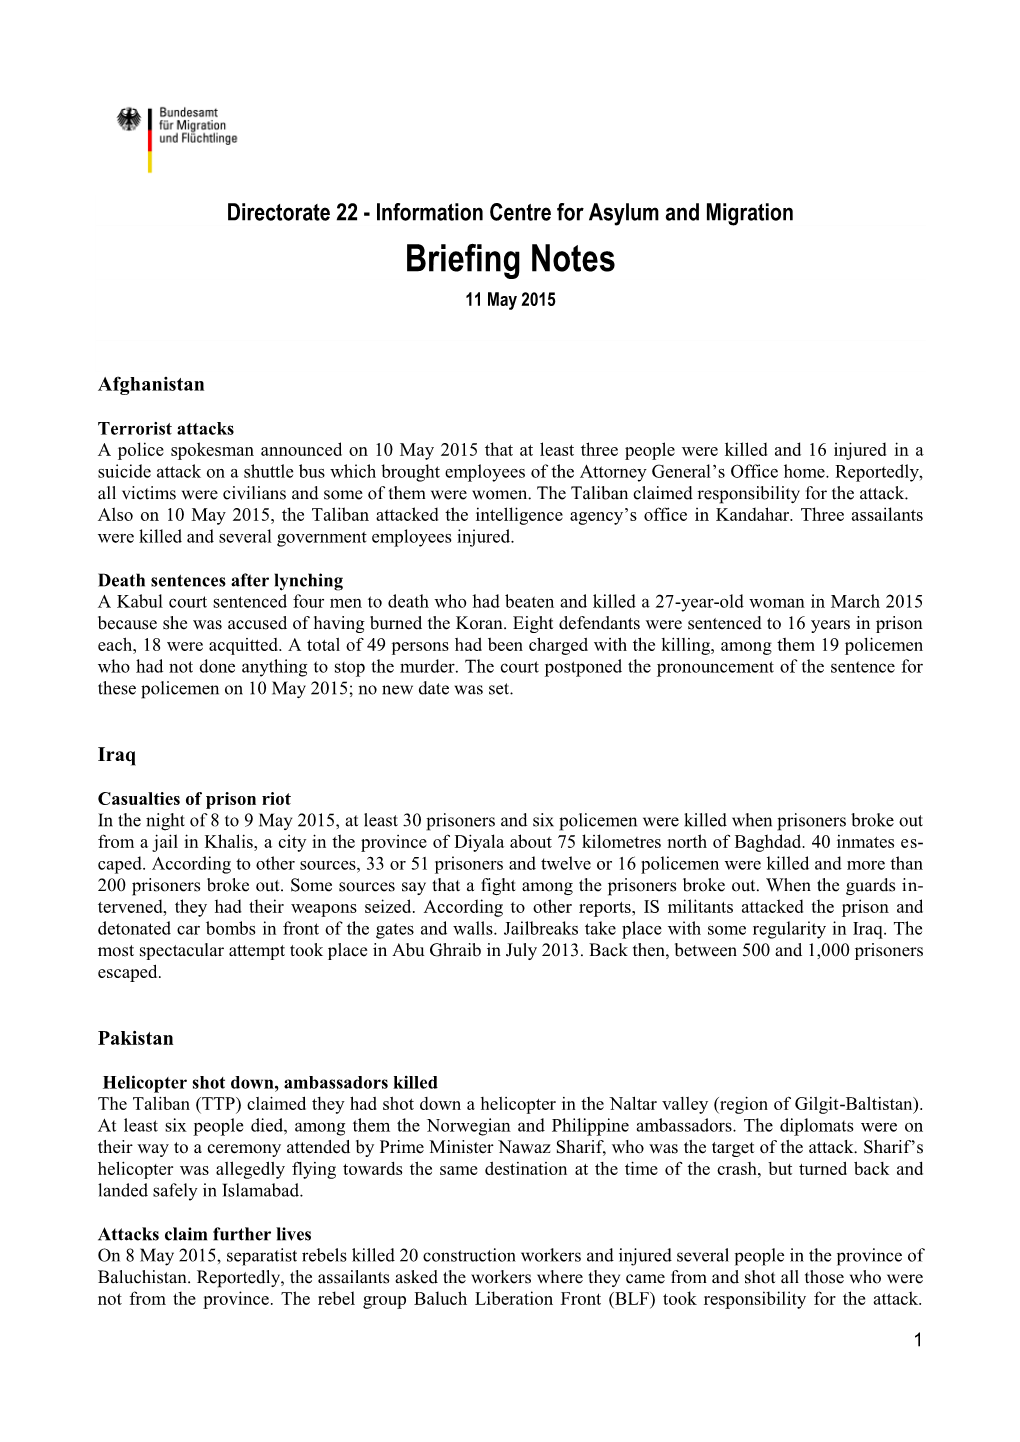 Briefing Notes 11 May 2015